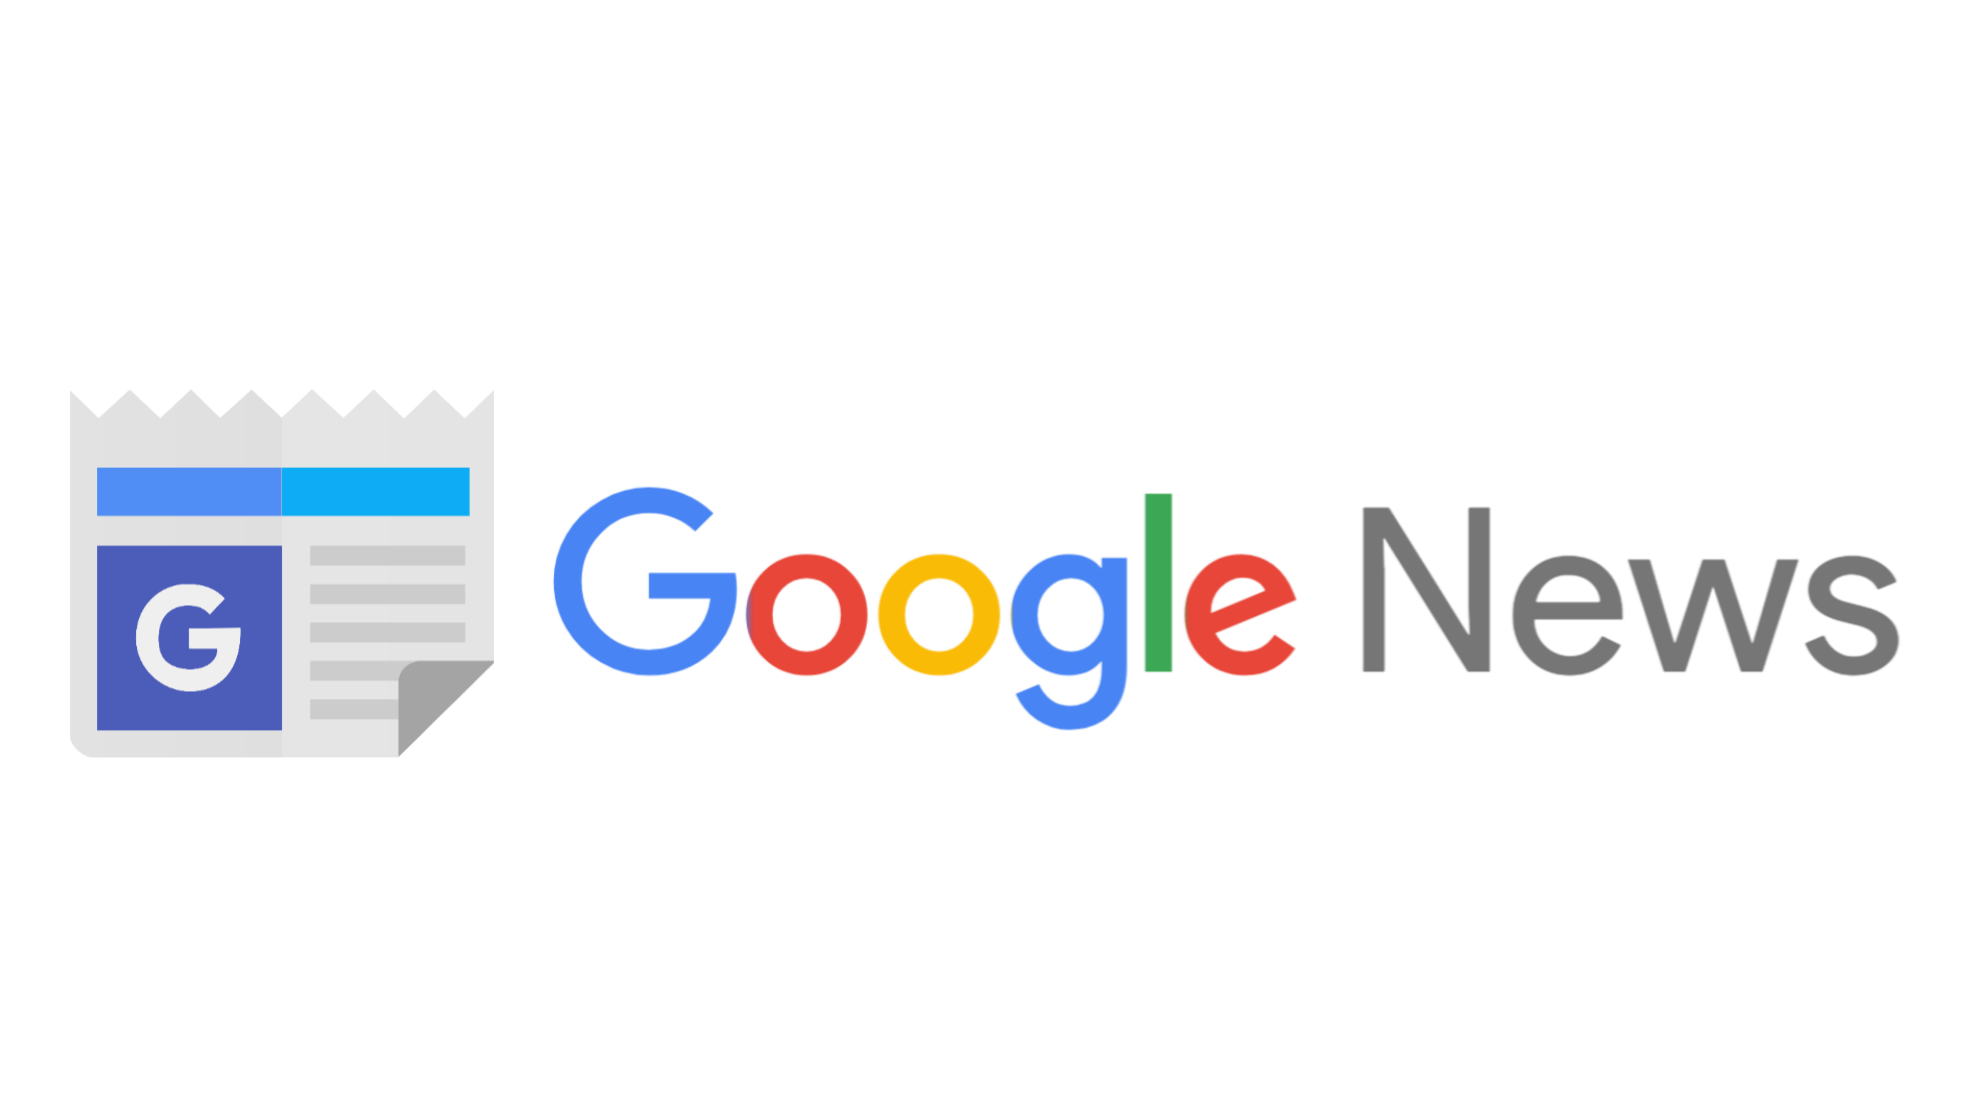 Google News: Xu hướng giúp tăng thứ hạng và traffic tự nhiên cho website